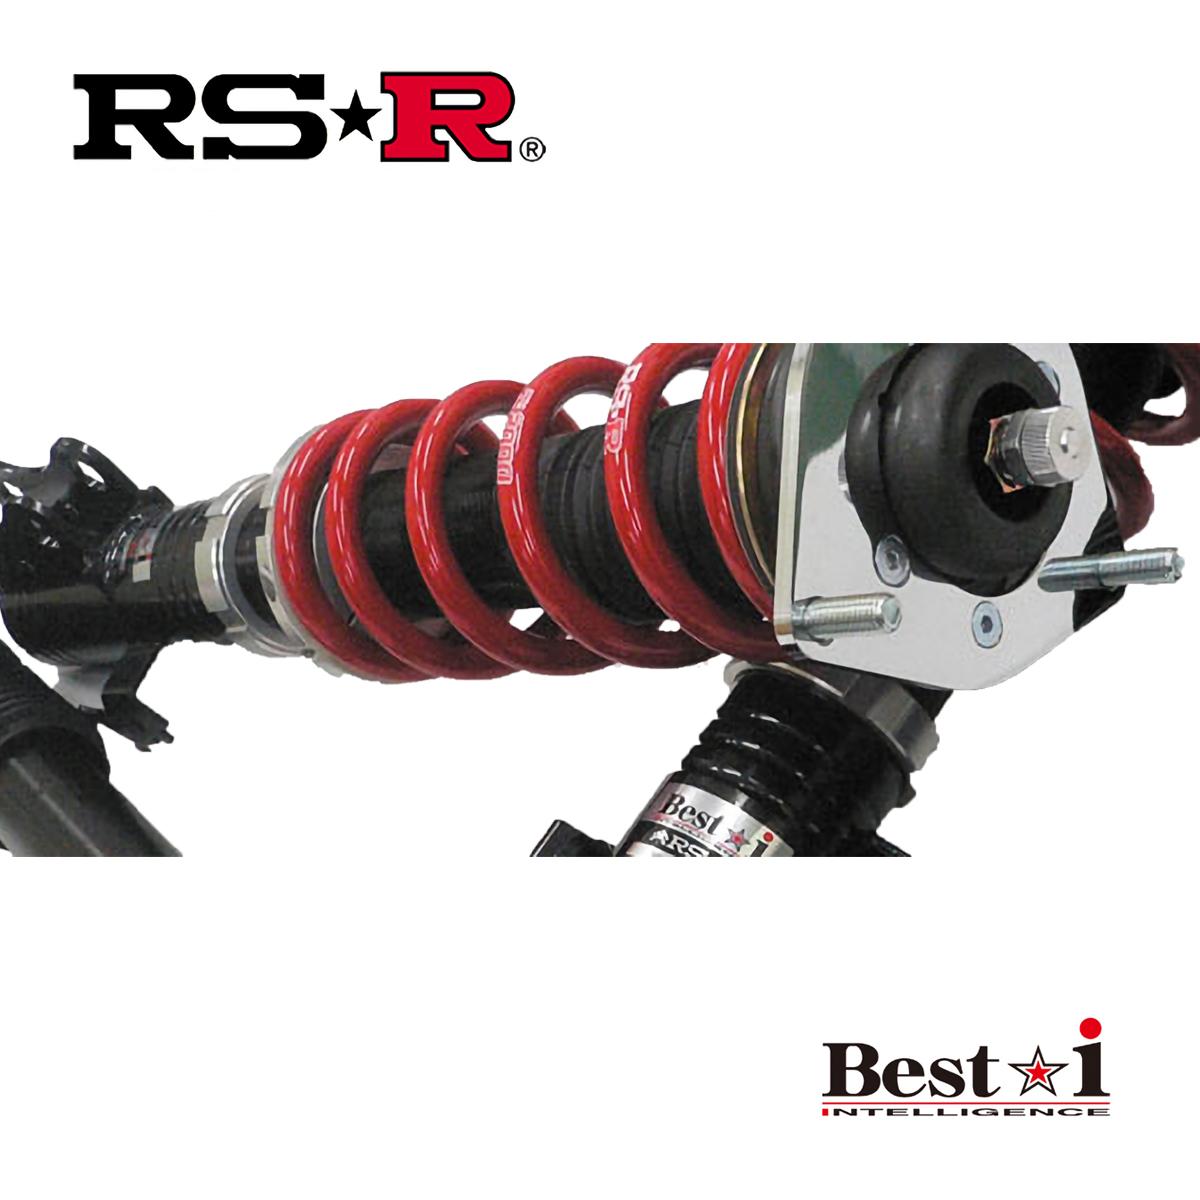 RSR プリウス ZVW50 車高調 リア車高調整:ネジ式/推奨バネレート仕様 BIT580M RS-R Best-i ベストi